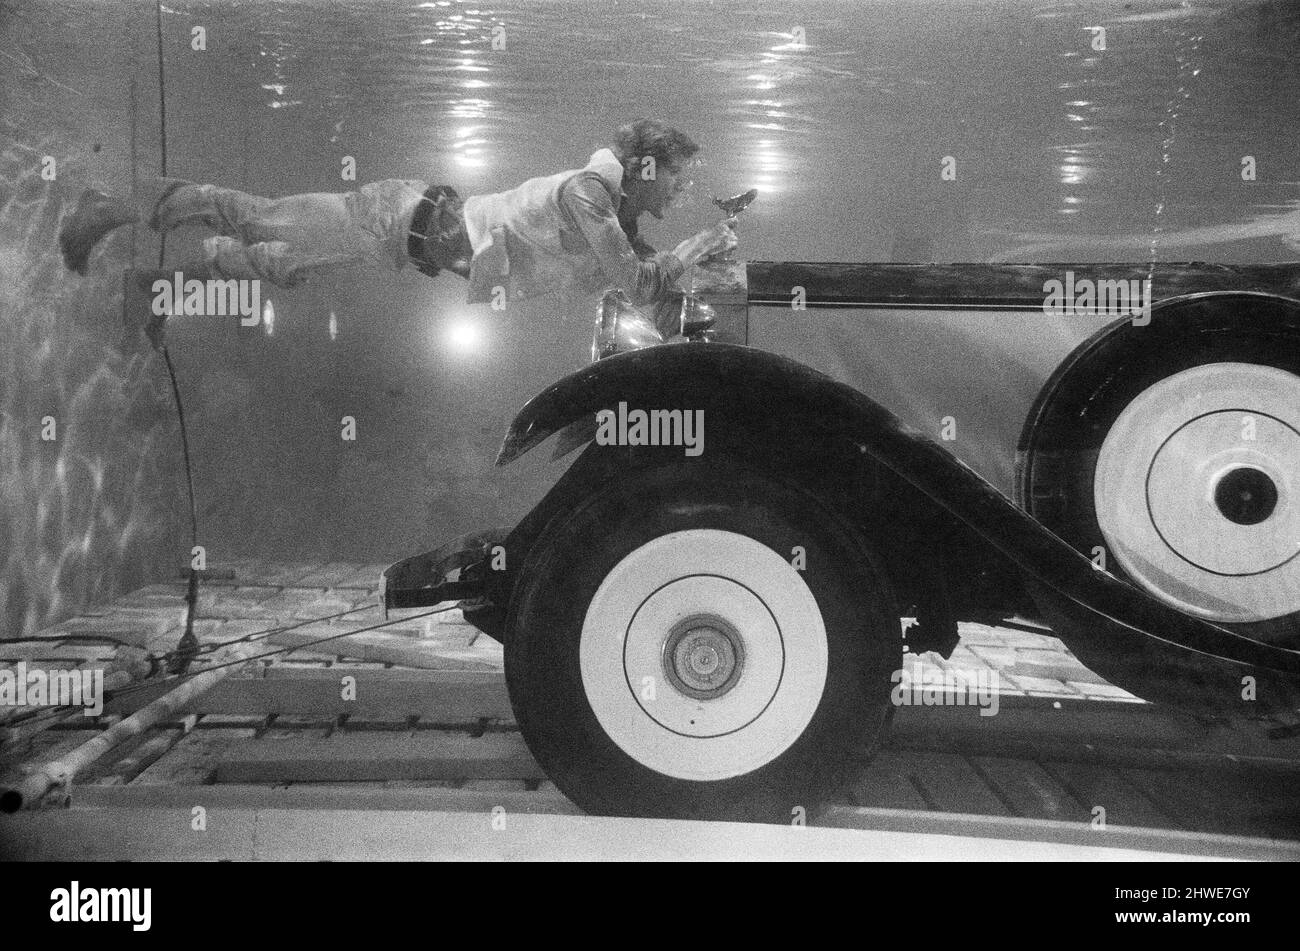 Michael Crawford, attore di 27 anni, che non usa stunt men in parti pericolose, filma sott'acqua con un Rolls Royce presso gli studi MGM di Elstree per la nuova produzione di volpe del Novecento, 'Hello - Arrivederci'. Le scene riprese sott'acqua sono state le sequenze finali della sequenza di superficie superiore originale eseguita a Cannes, dove Crawford ha guidato i rotoli in una piscina. Gli fu richiesto di trattenere il respiro per le telecamere per 3 minuti prima che la 'risrue' fosse fatta. 17th ottobre 1969. Foto Stock